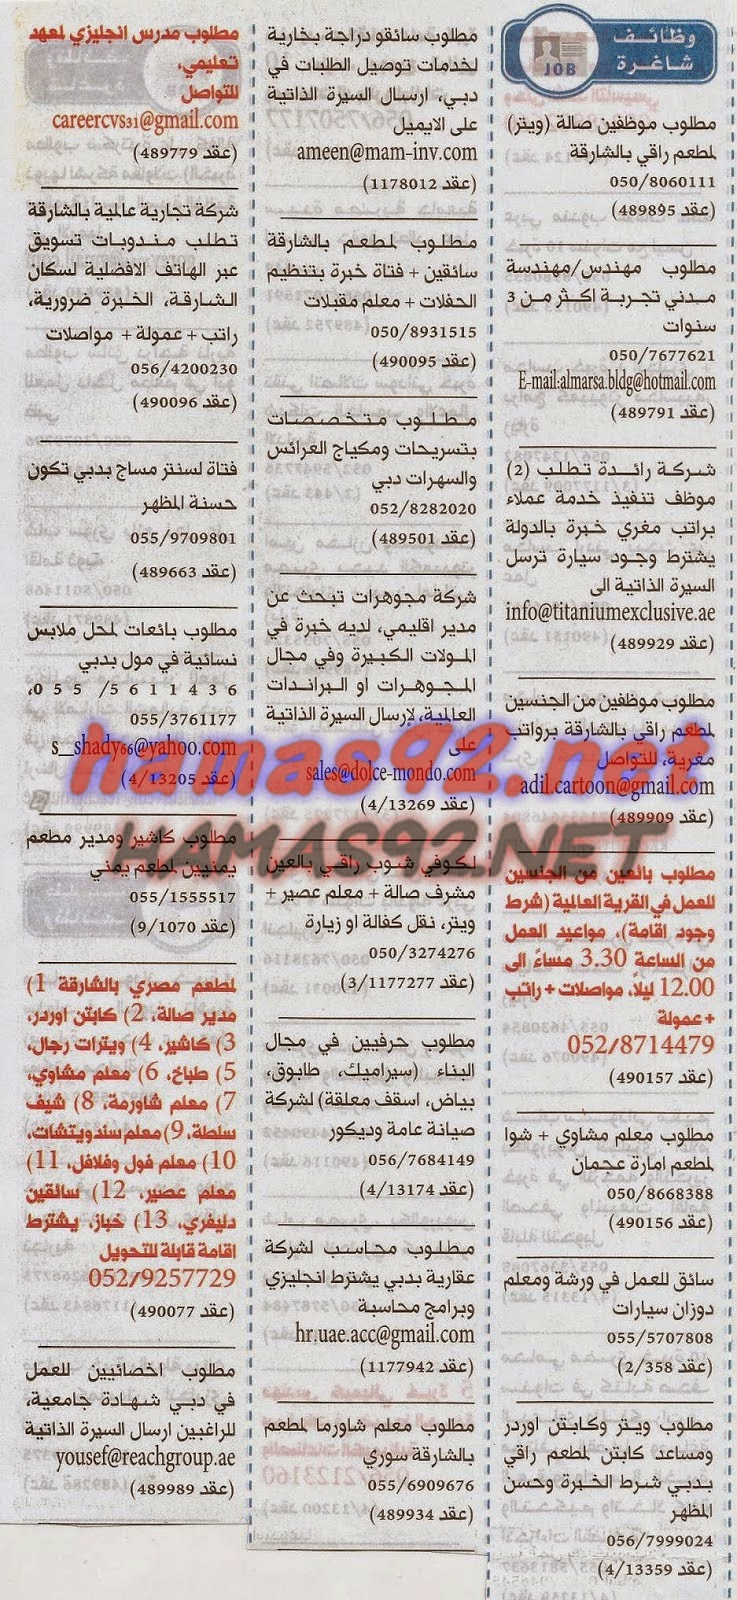 وظائف جريدة الخليج الاماراتية السبت 27 ديسمبر 2014 - وظائف العرب